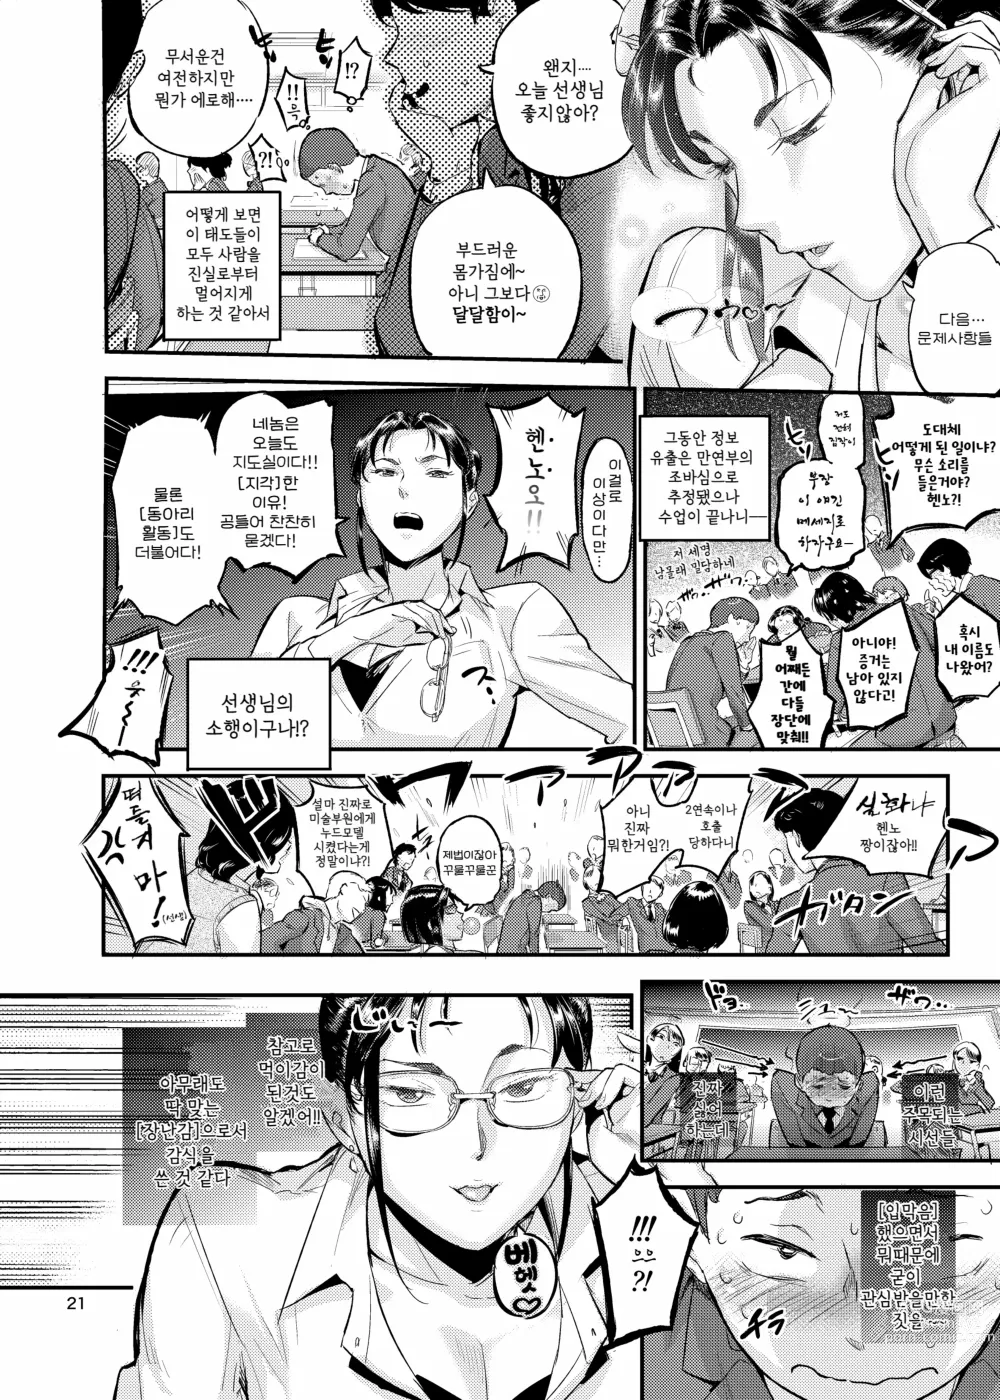 Page 21 of doujinshi 생활지도의 마츠노하는 노려본 학생을 잡아먹고 있다